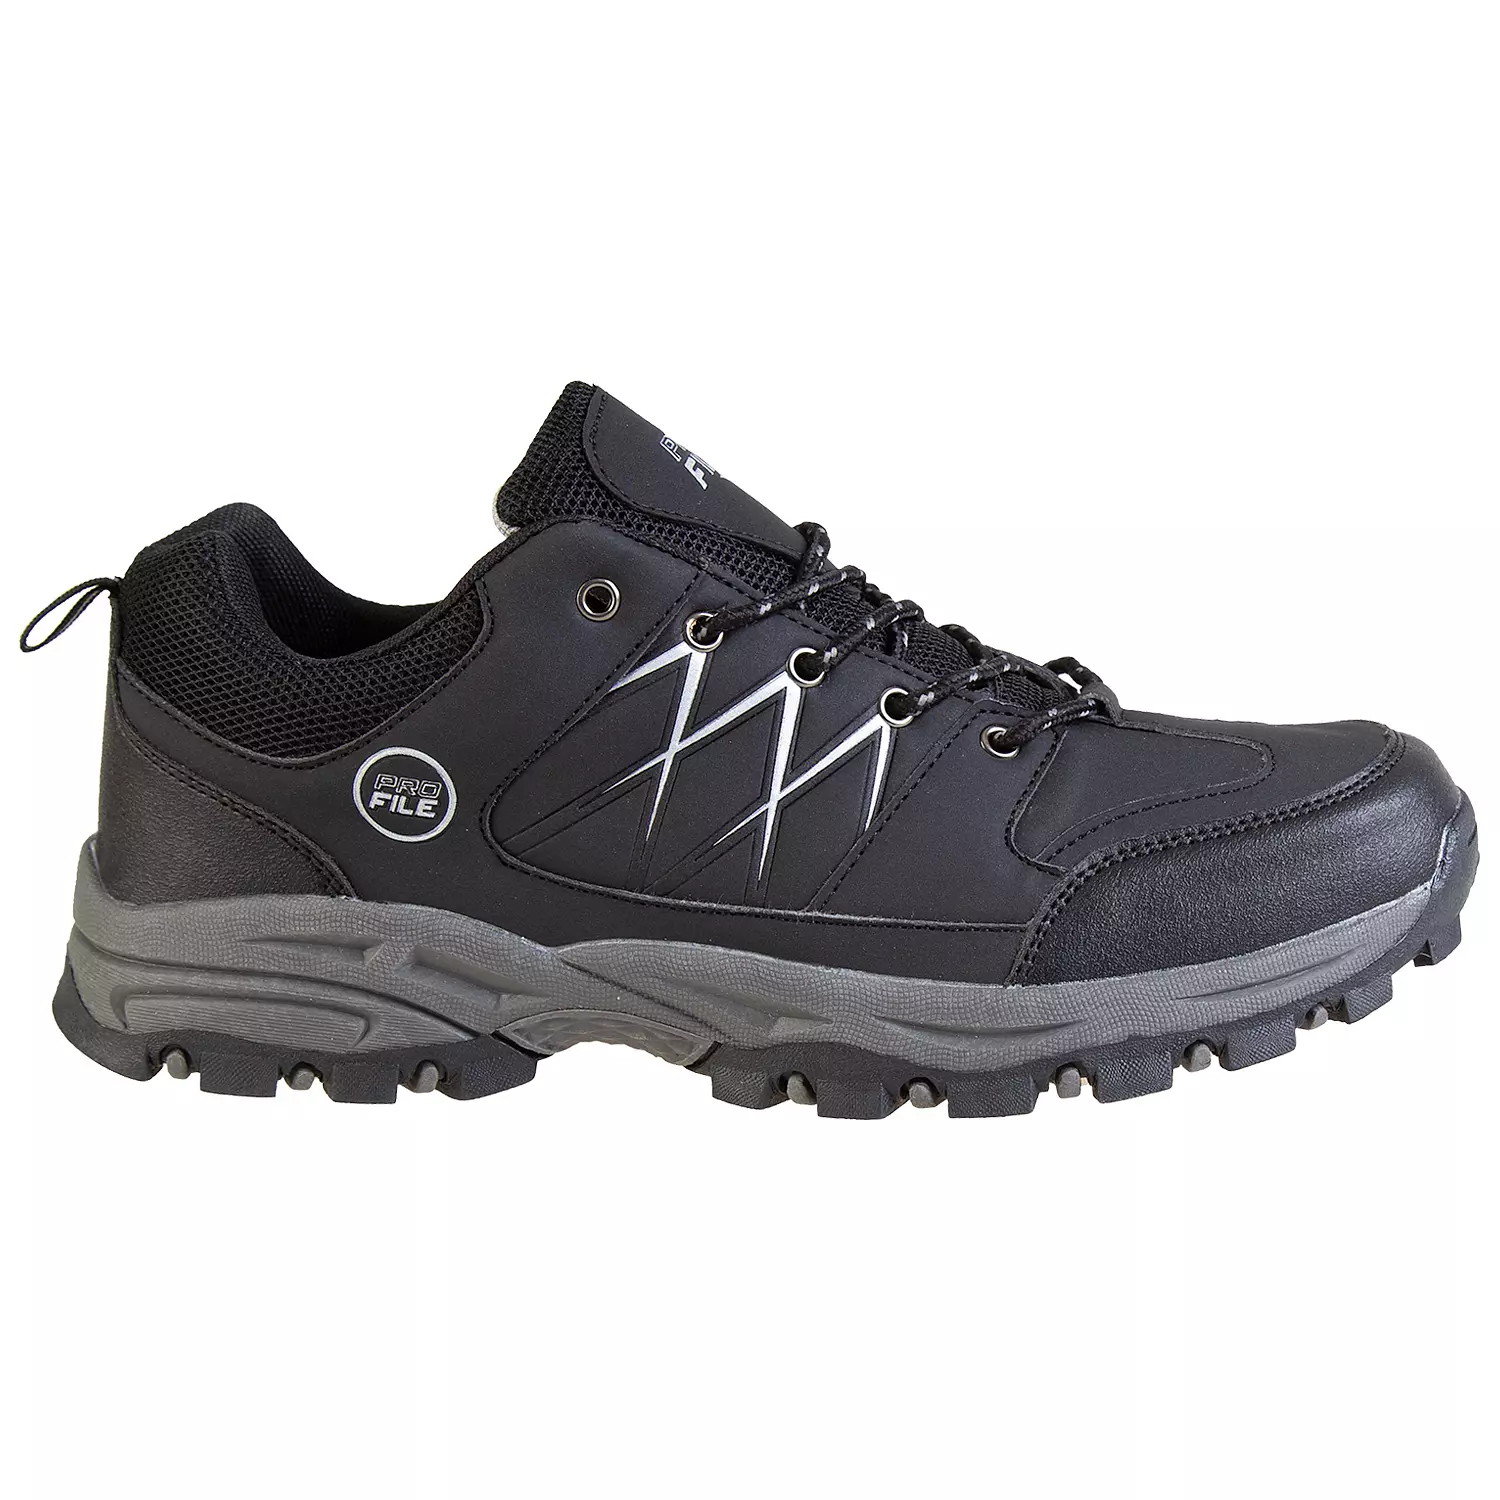 Chaussures de randonnée basses pour hommes avec bandes réfléchissantes, noir, taille 8